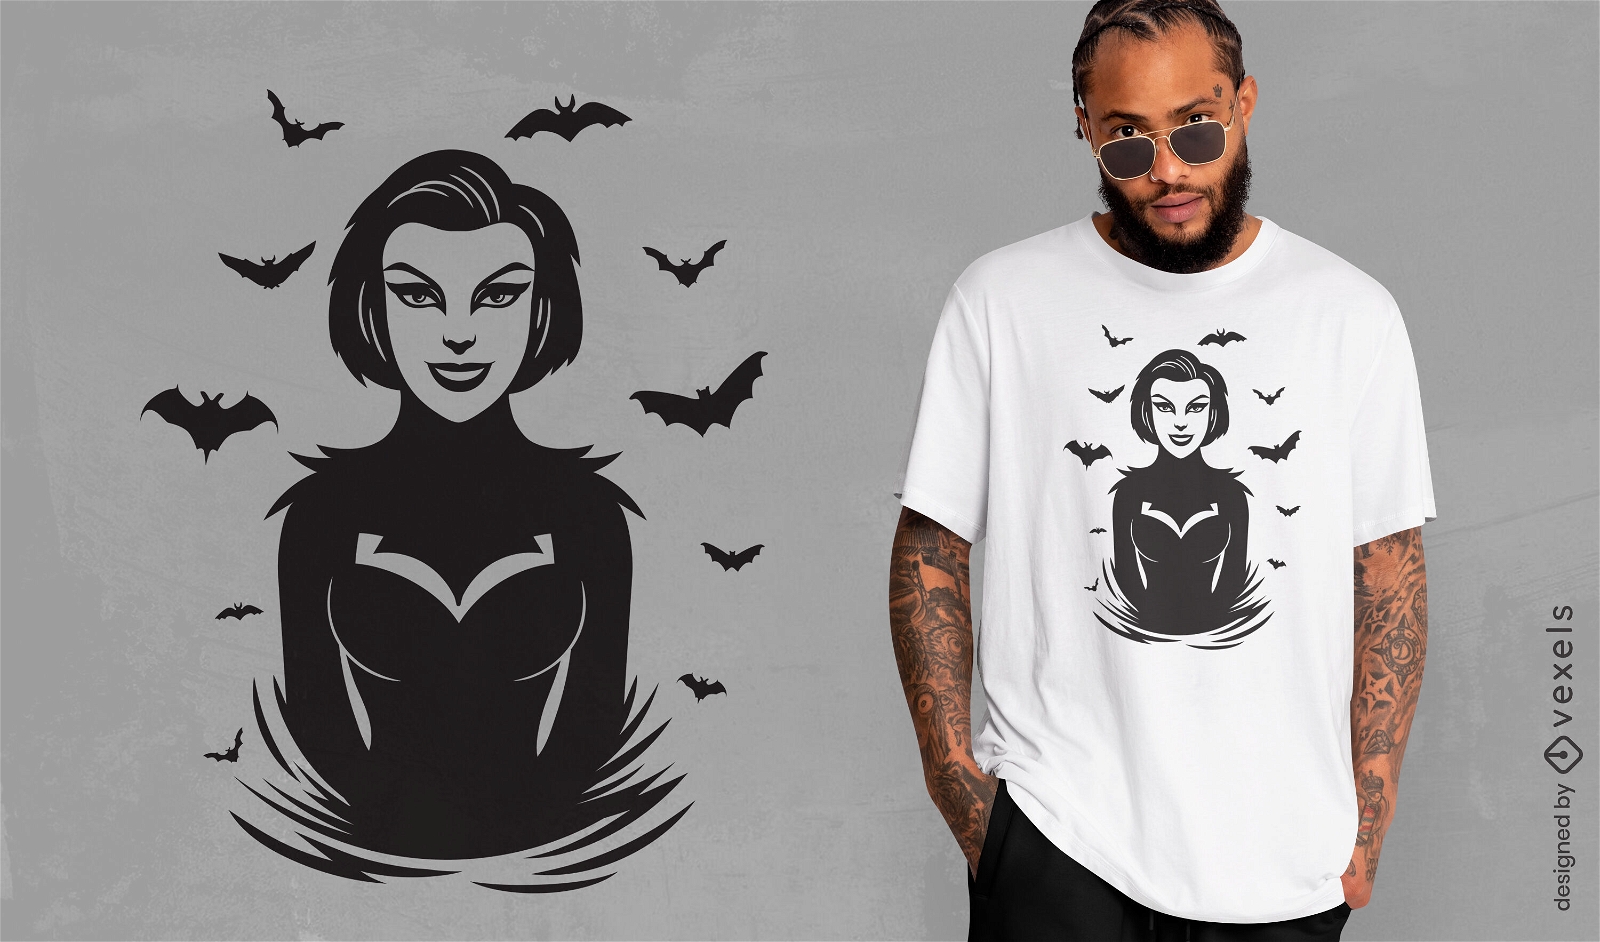 Diseño de camiseta de mujer vampiro gótico.